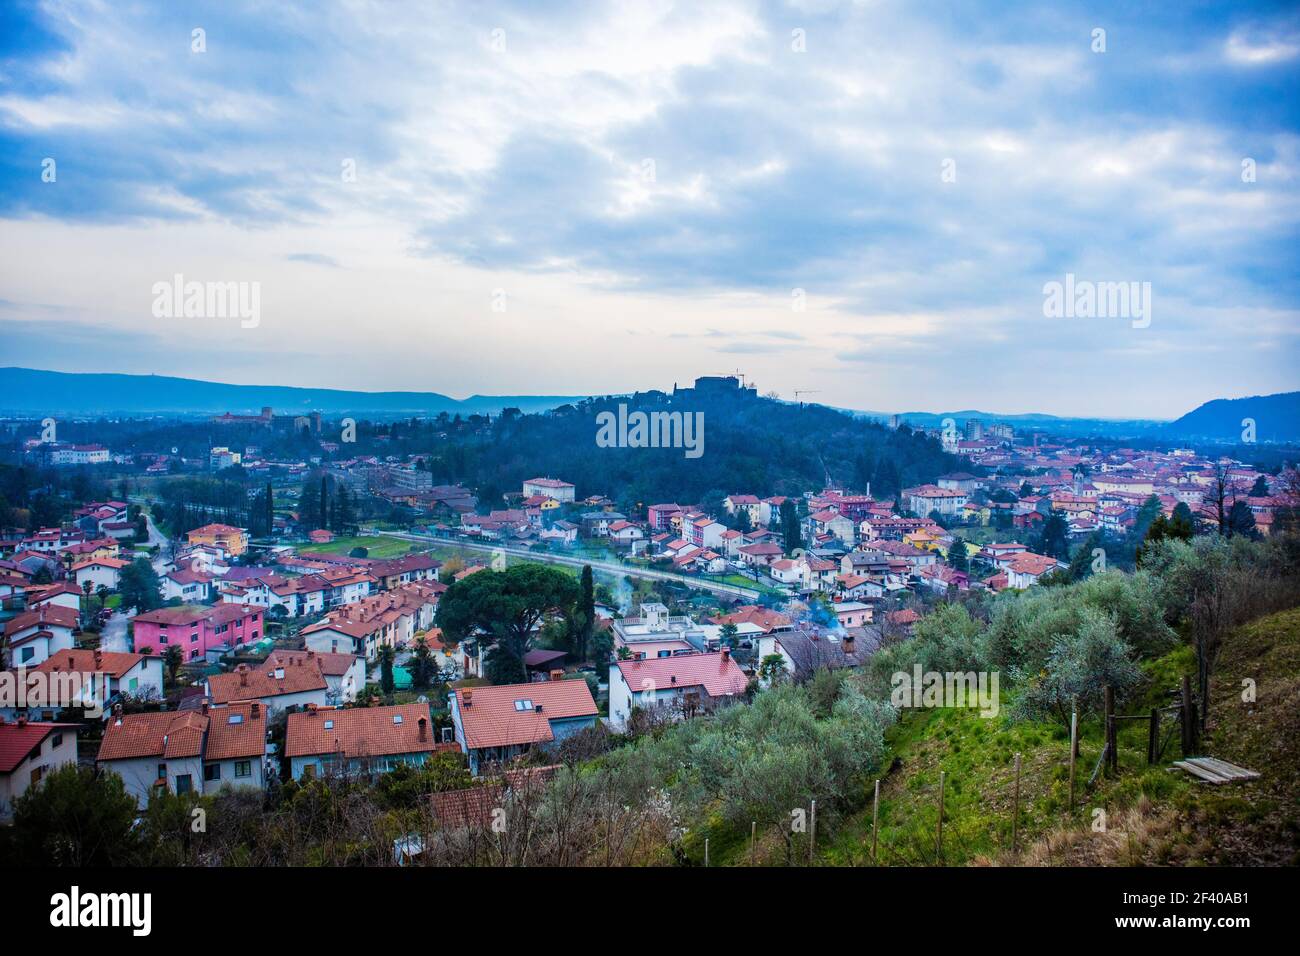 Blick auf Görz in Italien von der Kirche in Slowenien. Panorama der mittelalterlichen Altstadt bei Nova Gorica in Slowenien. Stockfoto